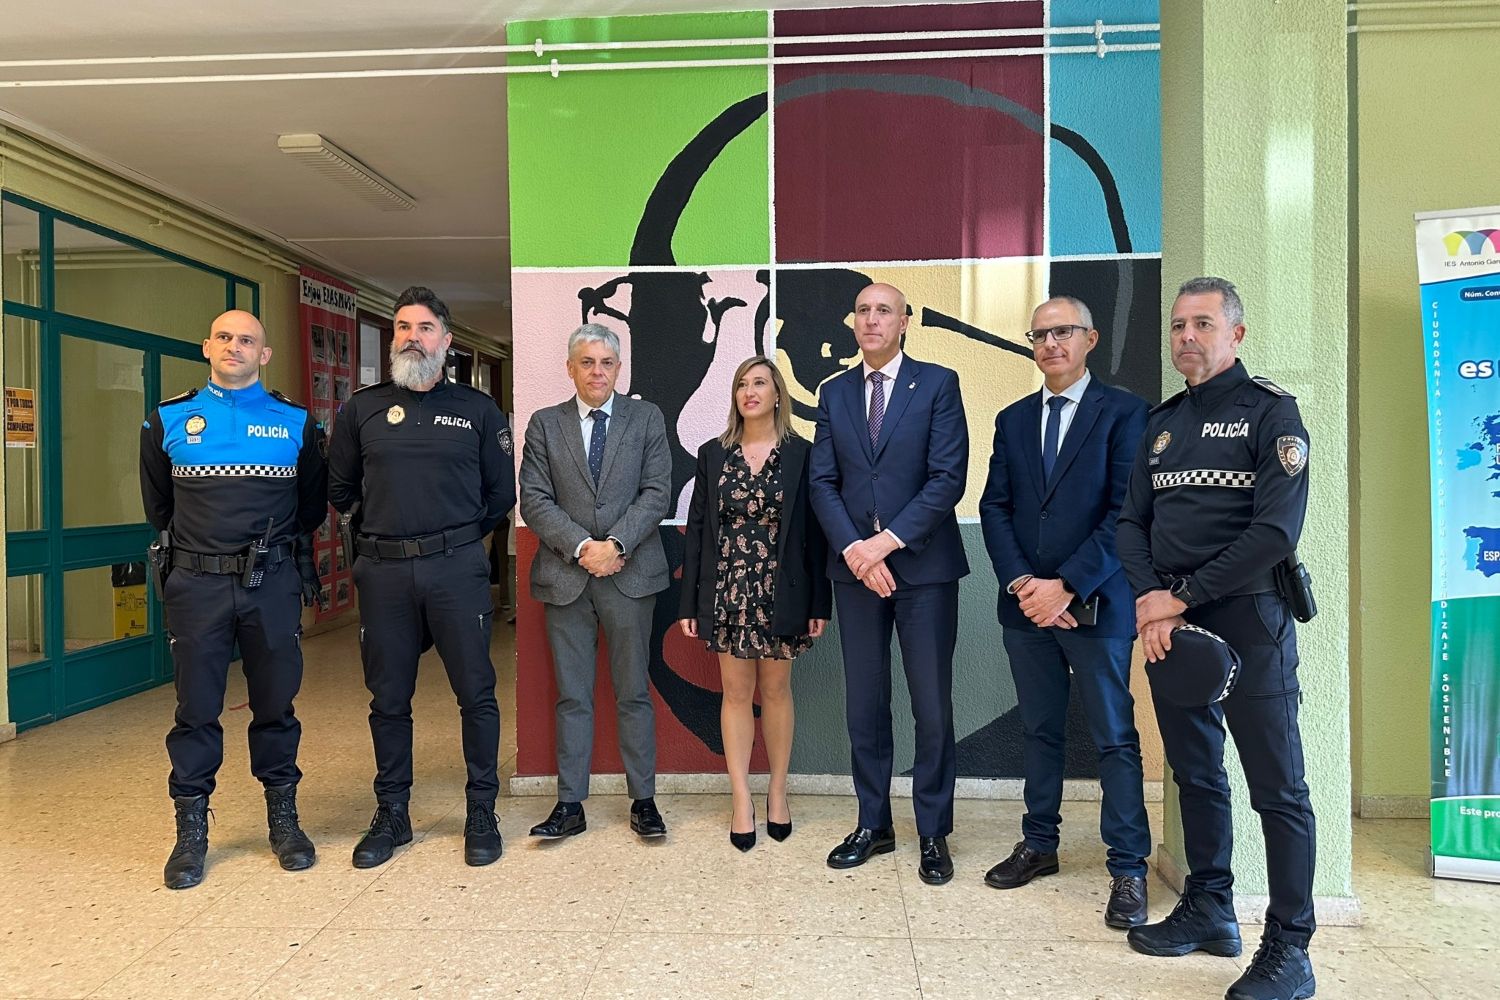 El grupo Paidos de la Policía Local de León recibe el Premio Concordia del IES García Bellido